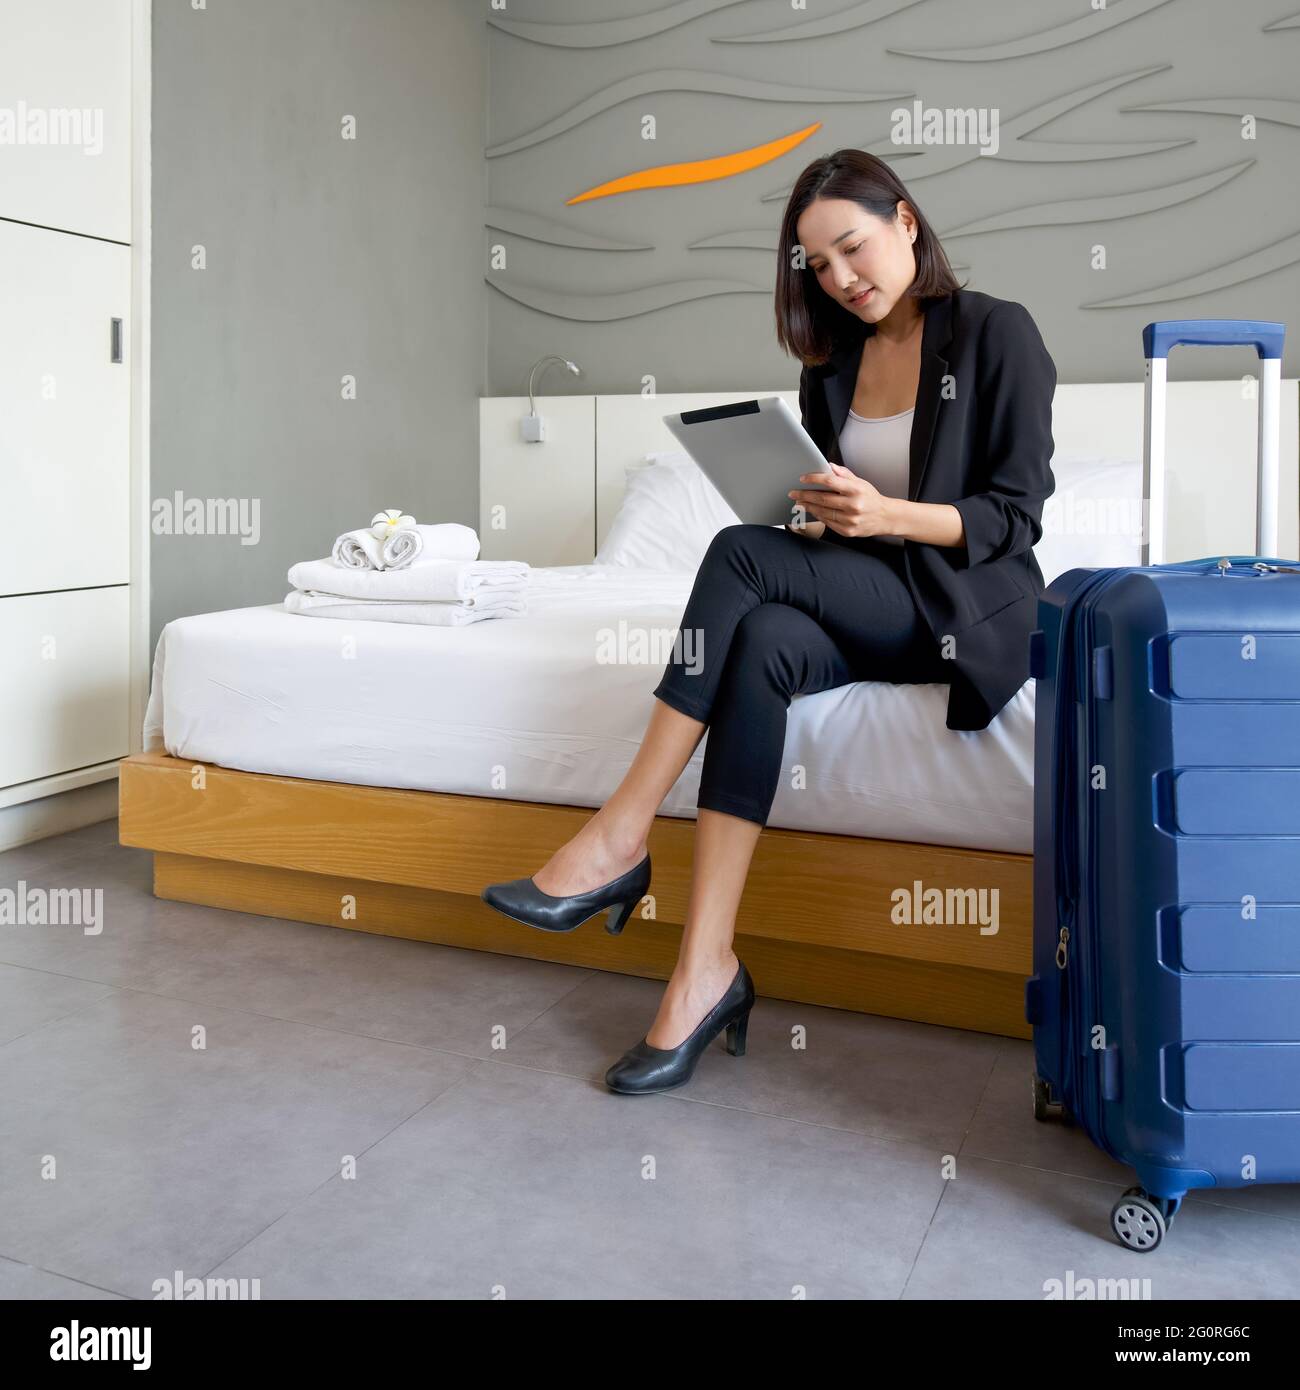 Asiatische Geschäftsfrau in schwarzem Anzug sitzt mit Tablet-Computer in  der Hand. Ihr Gepäck wurde neben das Bett gelegt. Die Atmosphäre der Arbeit  im Freien während des Th Stockfotografie - Alamy